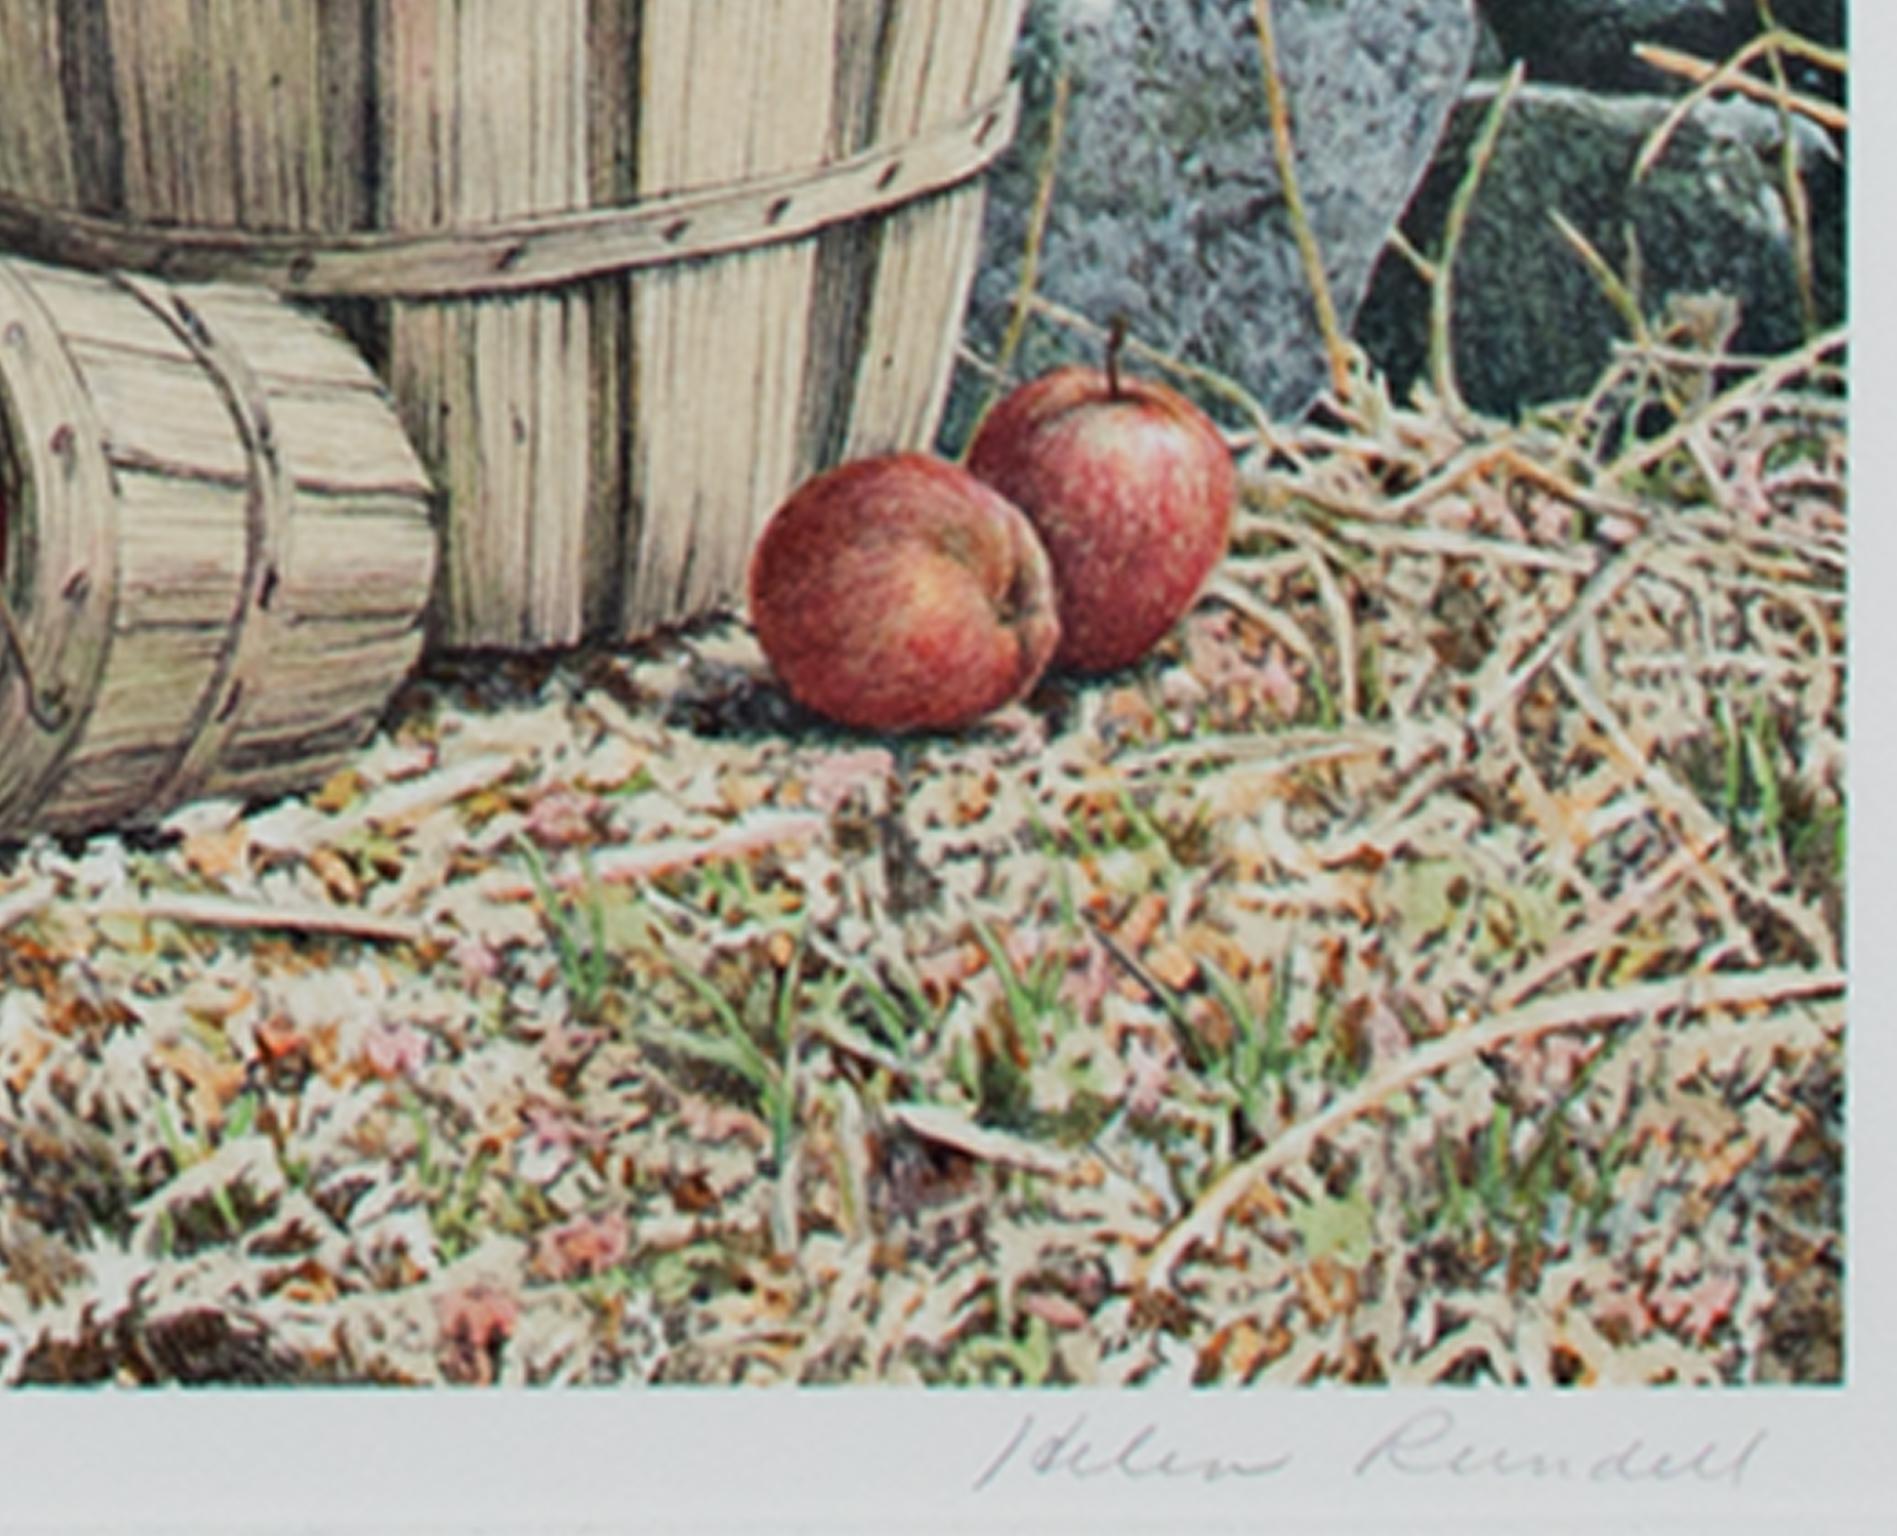 Fin du 20e siècle, lithographie en couleurs paysage arbre forêt panier pommes signée - Print de Helen Rundell